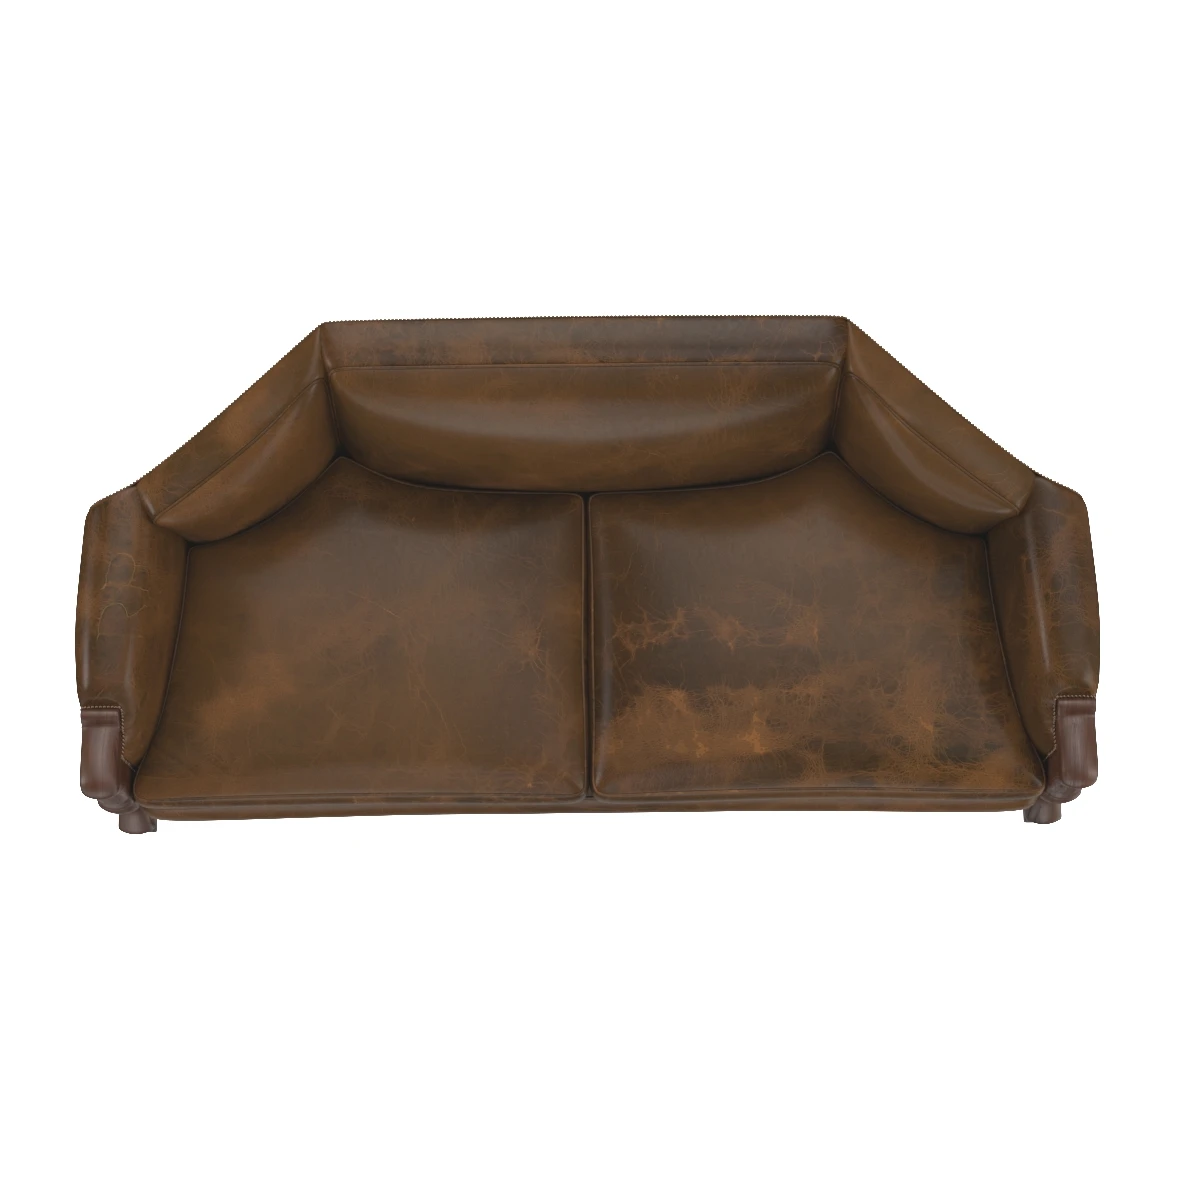 Sublime Fully Restored Regency 1810 Sofa 3D Model_03